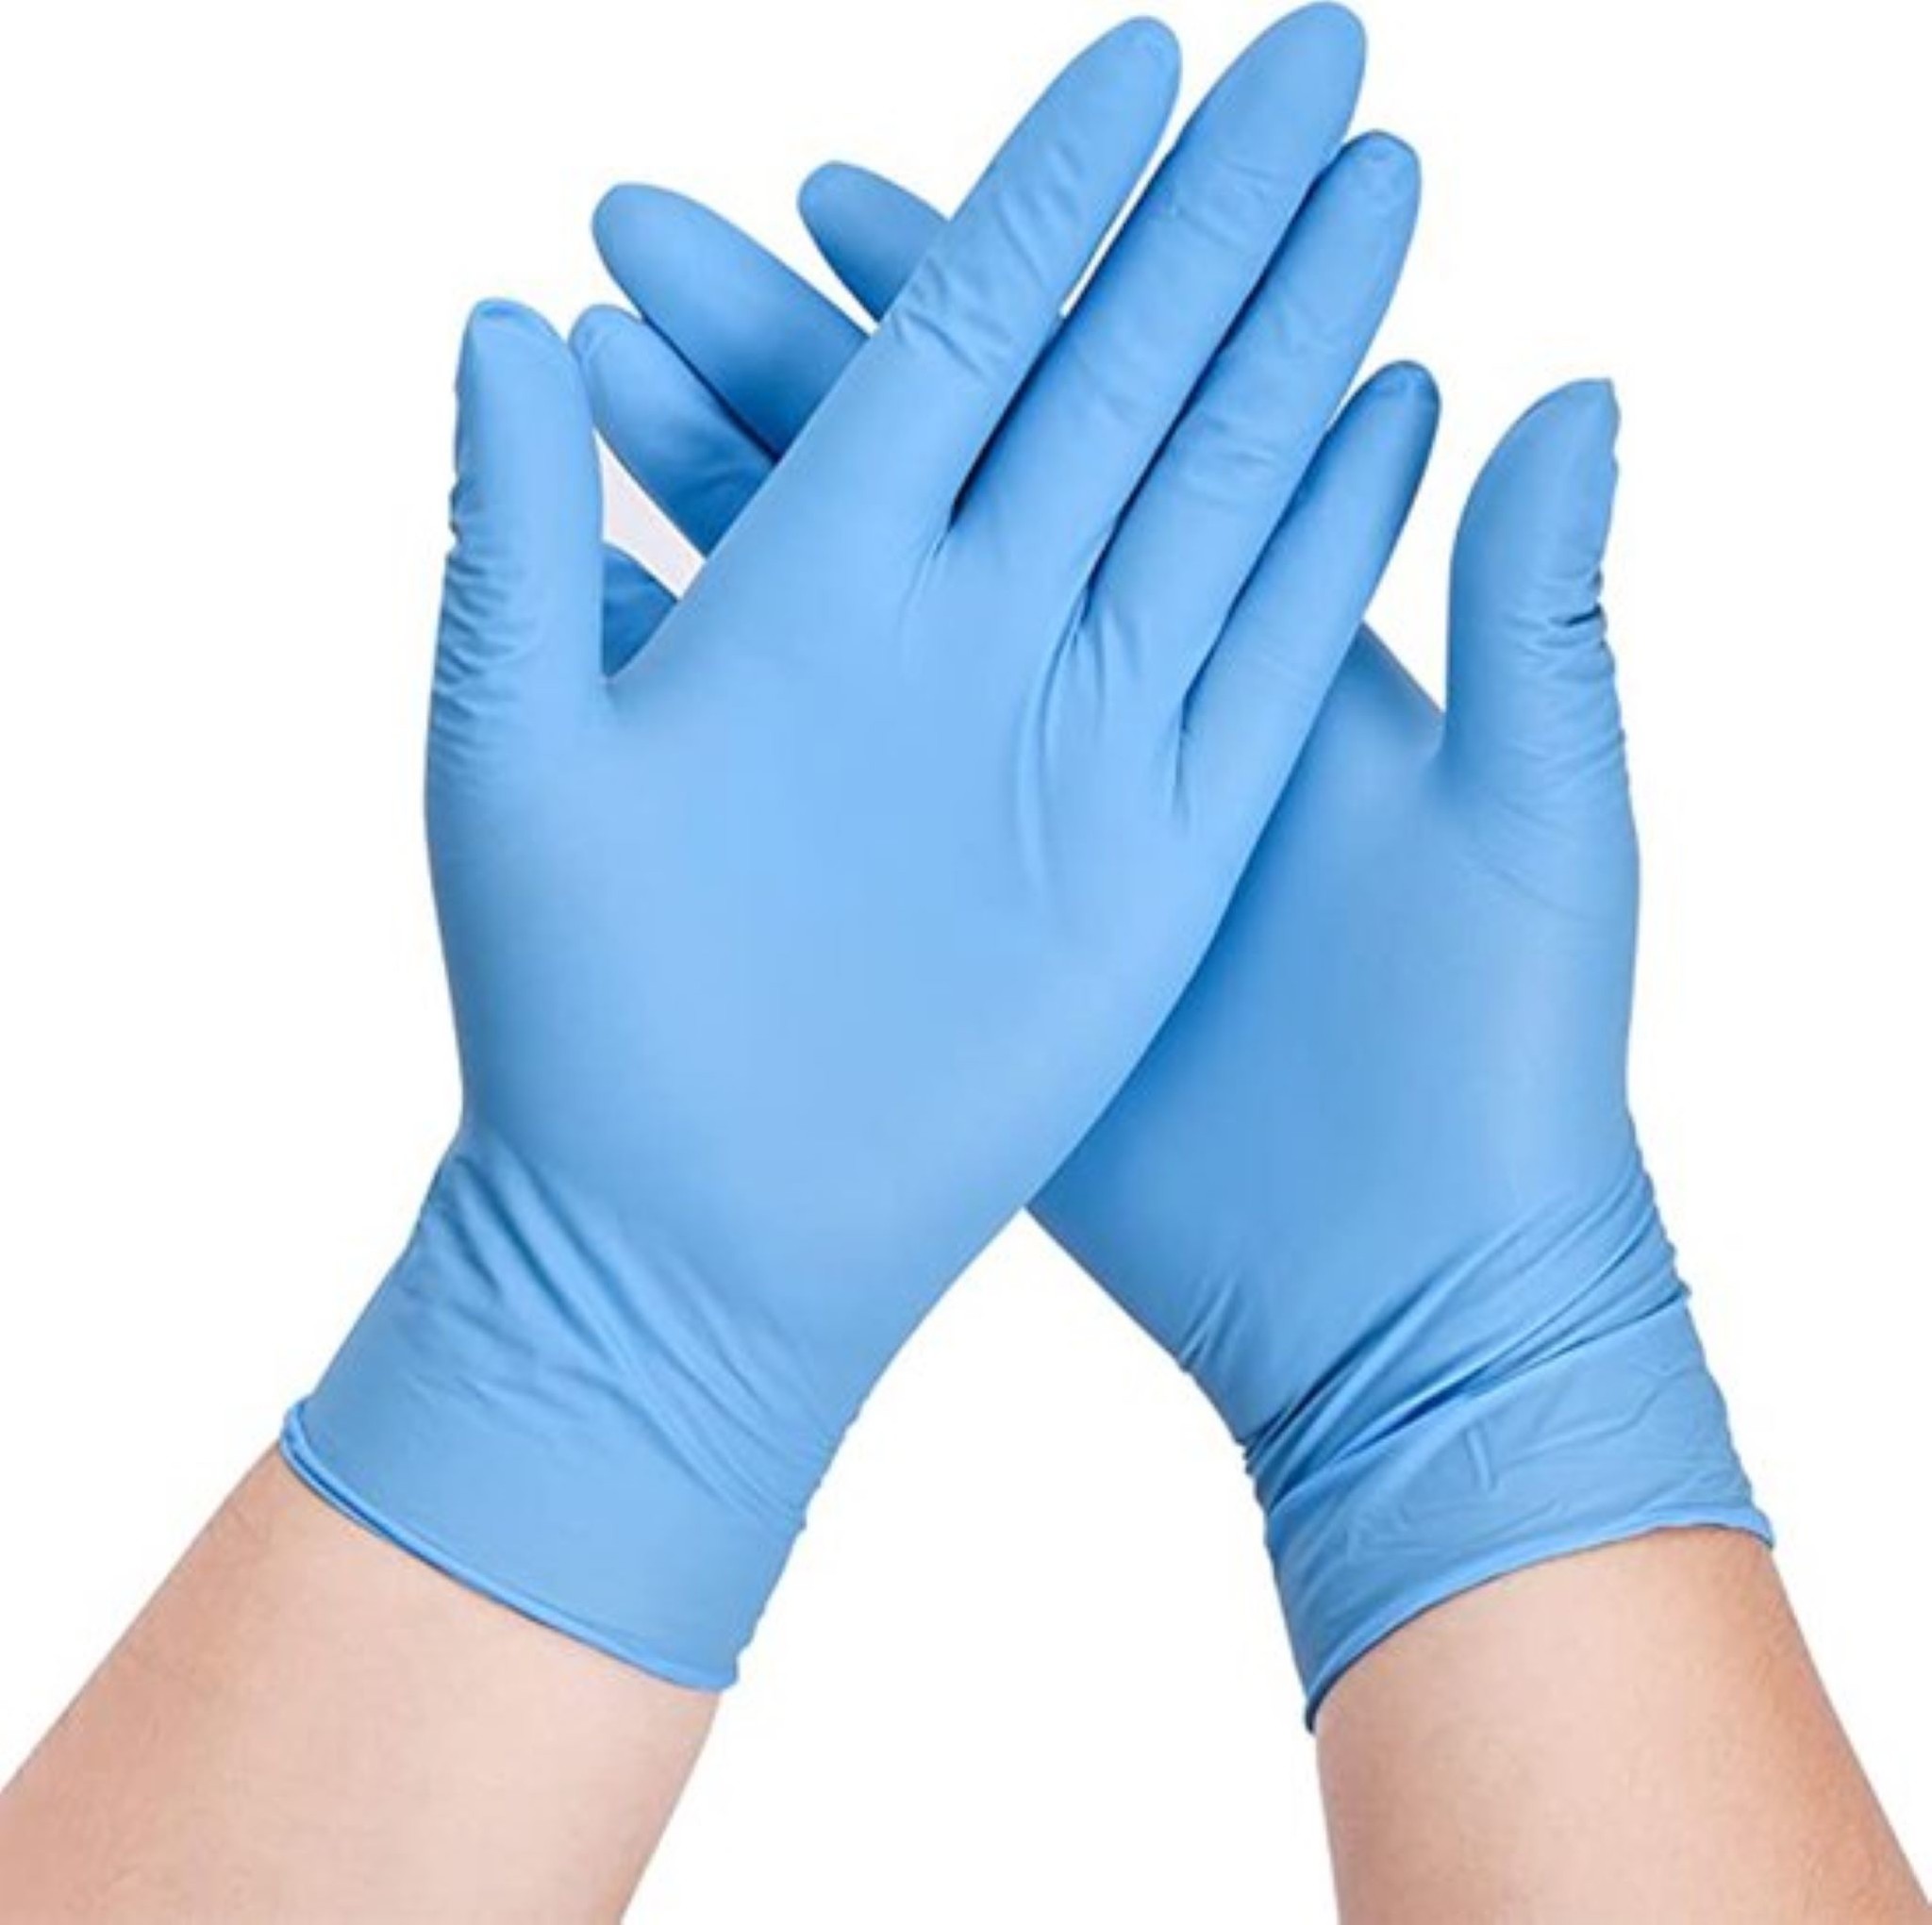 Afgeschaft echtgenoot Vlieger Wegwerp handschoenen blauw 200 stuks - Nitril handschoenen - Poedervri -  Discountershop.nl